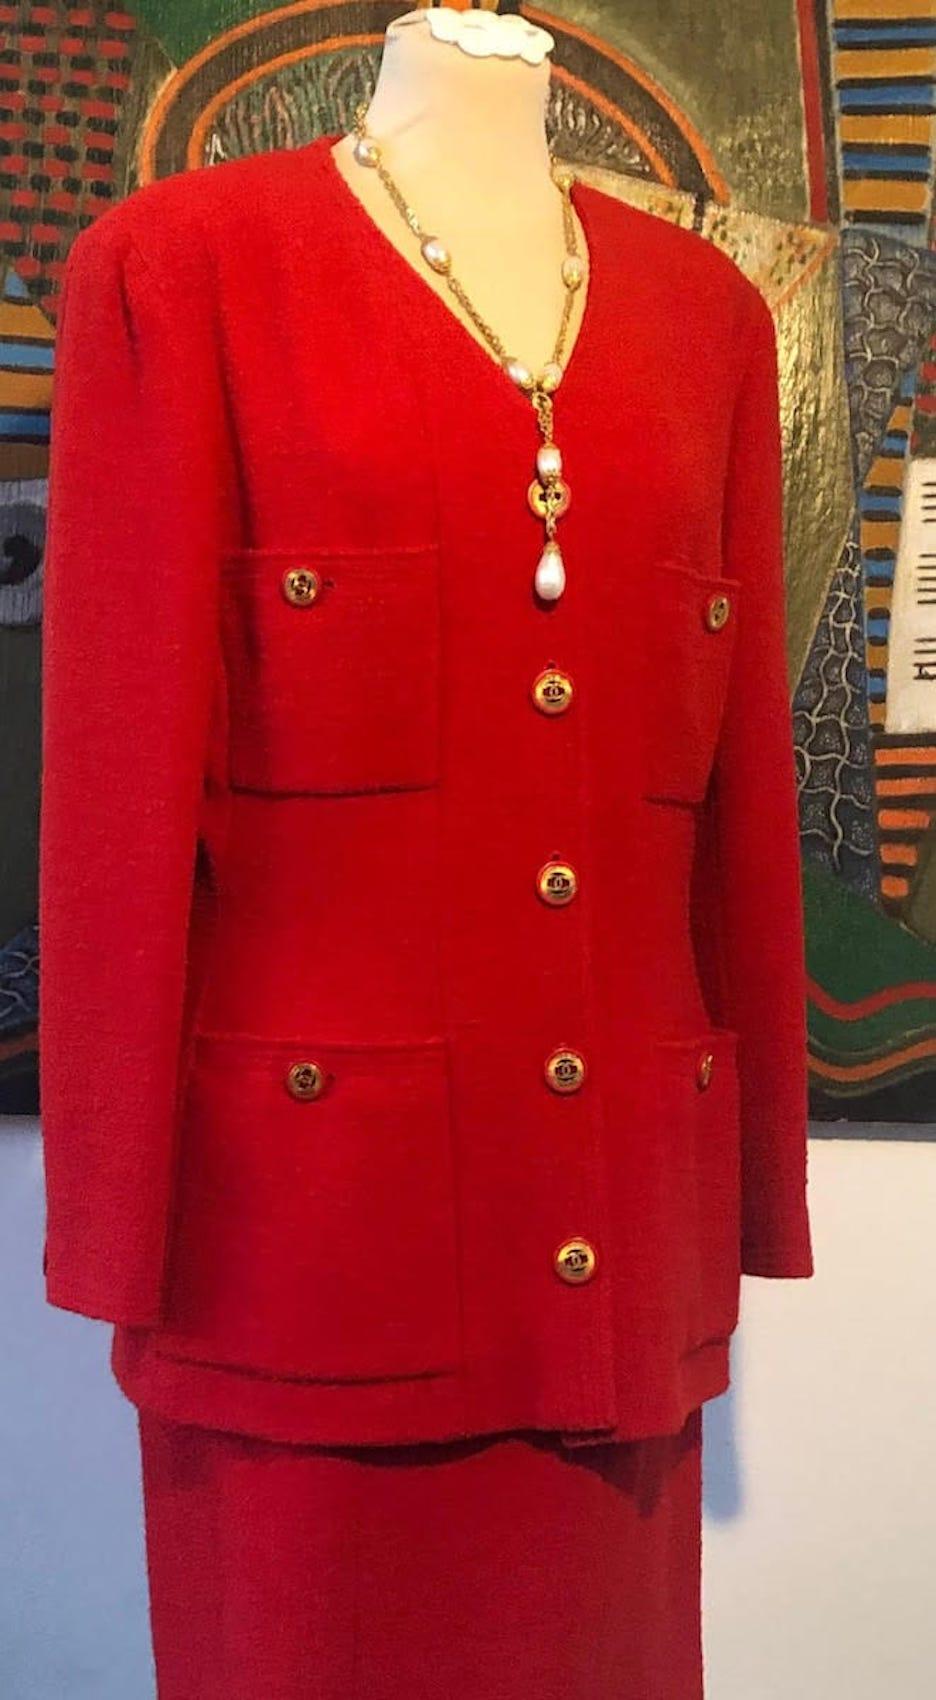 CHANEL 1990s CC-Buttons Single-Breasted Jacket Suit Red Tweed Bouclé
Un classique rare tailleur jupe bouclé rouge CHANEL, des années 1990 Collection 29 avec de superbes boutons (les boutons ressemblent à des boucles d'oreilles Chanel). Une veste à